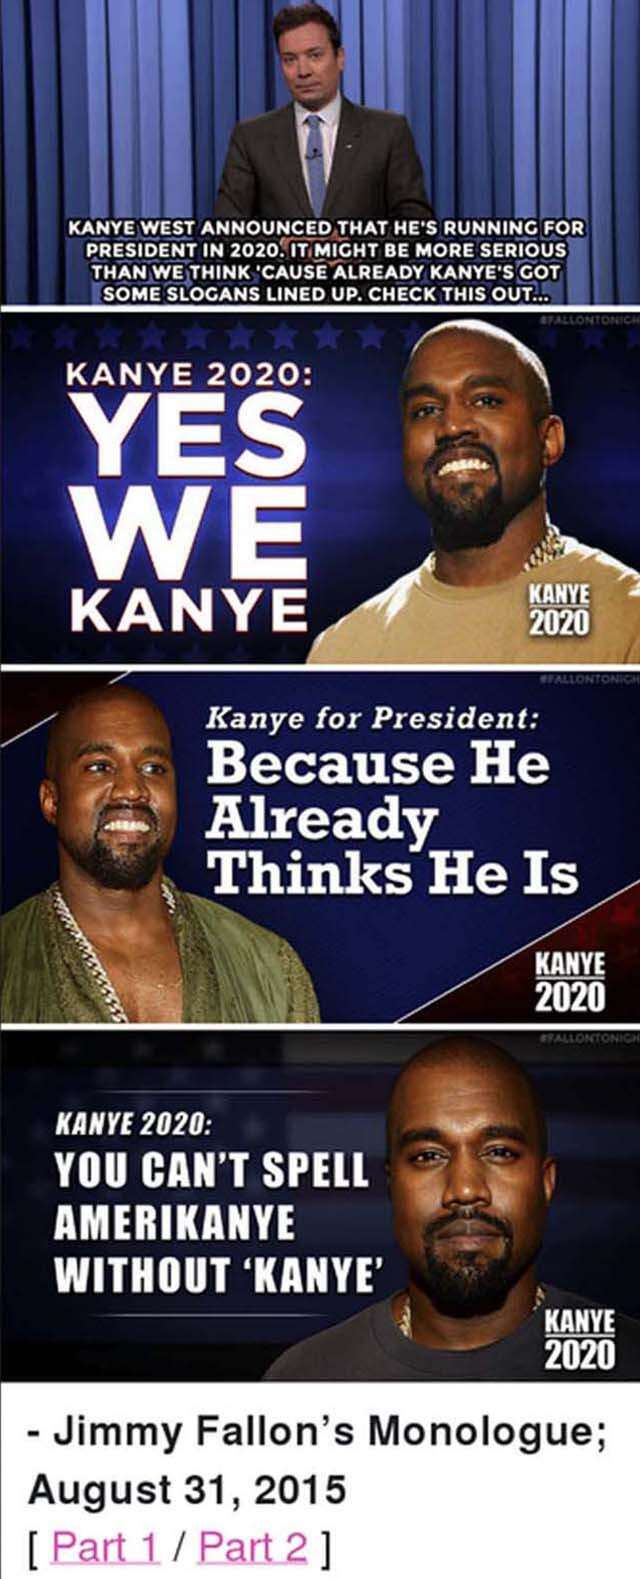 Kanye West For President Netizens Had The Best Meme Reactions Femina In